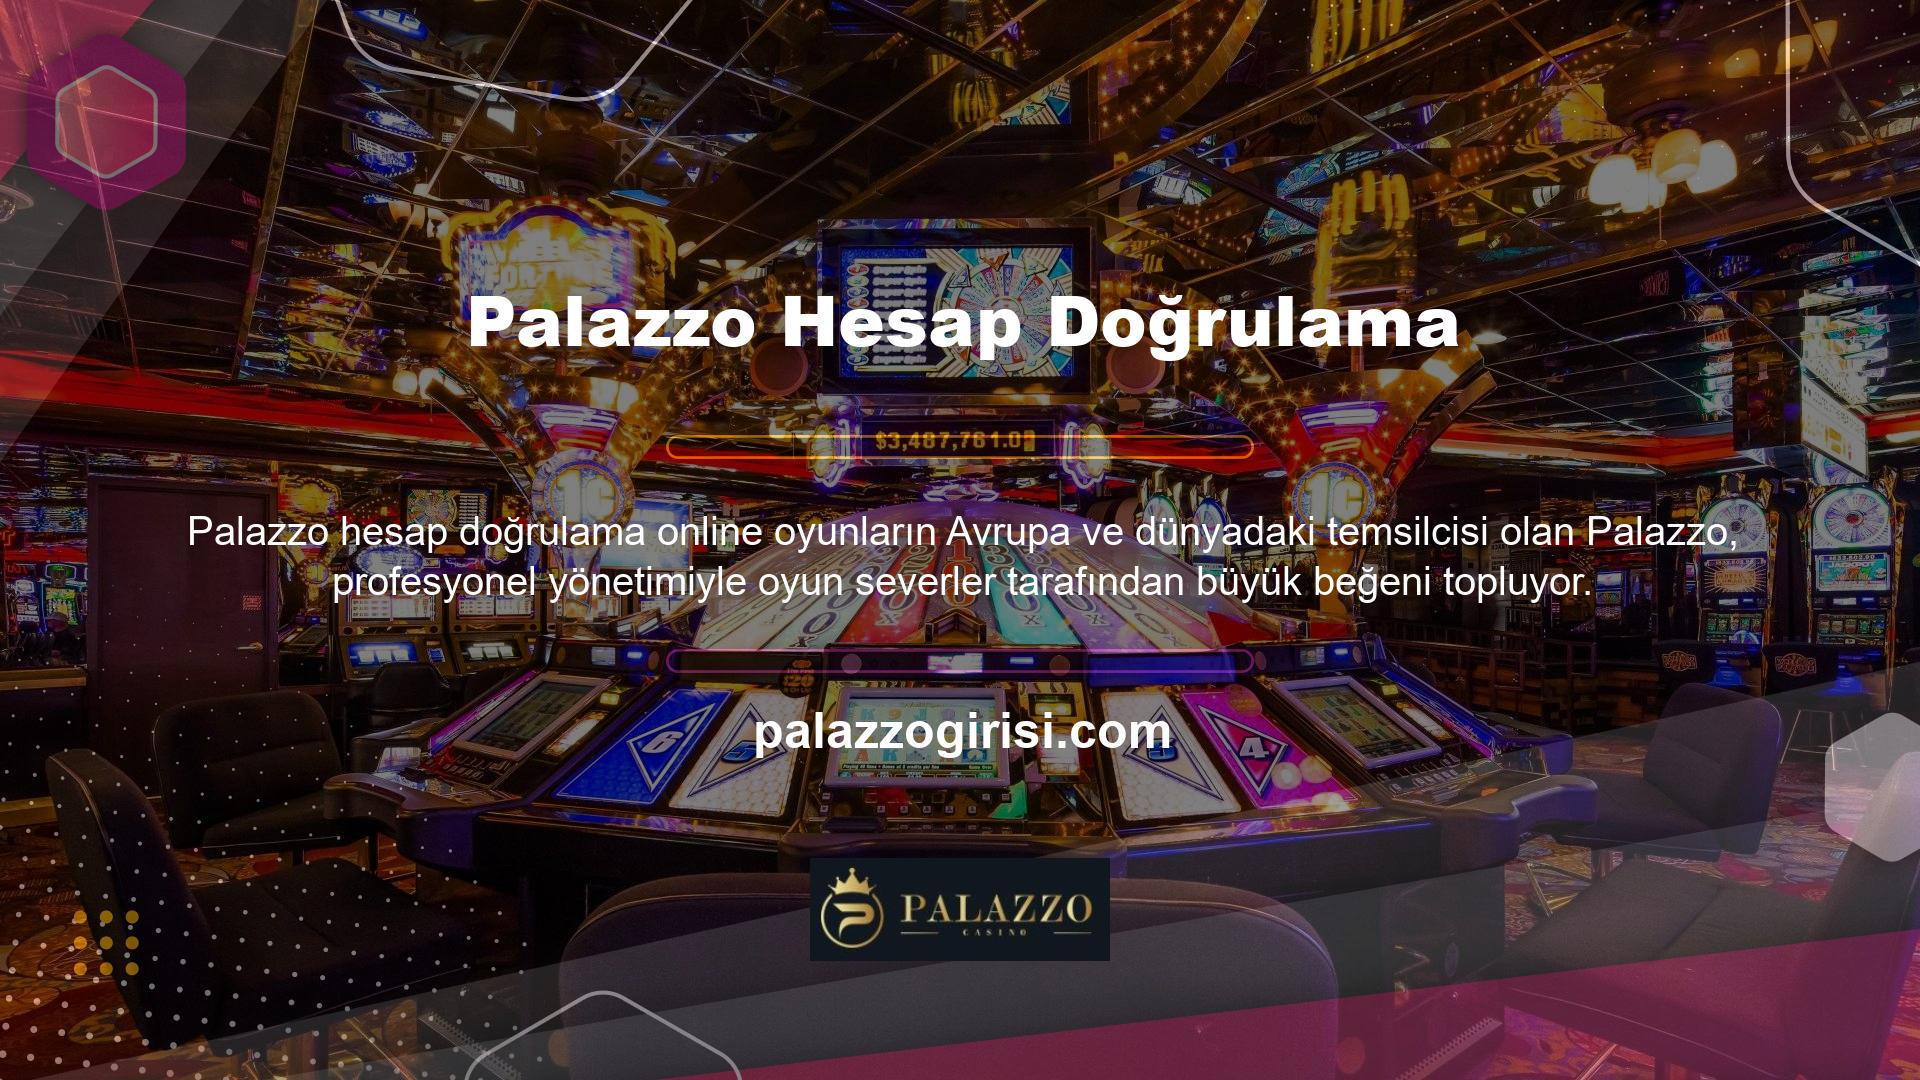 Palazzo, Türkiye'de her geçen gün artan üye sayısına sahip aktif bir bahis sitesidir